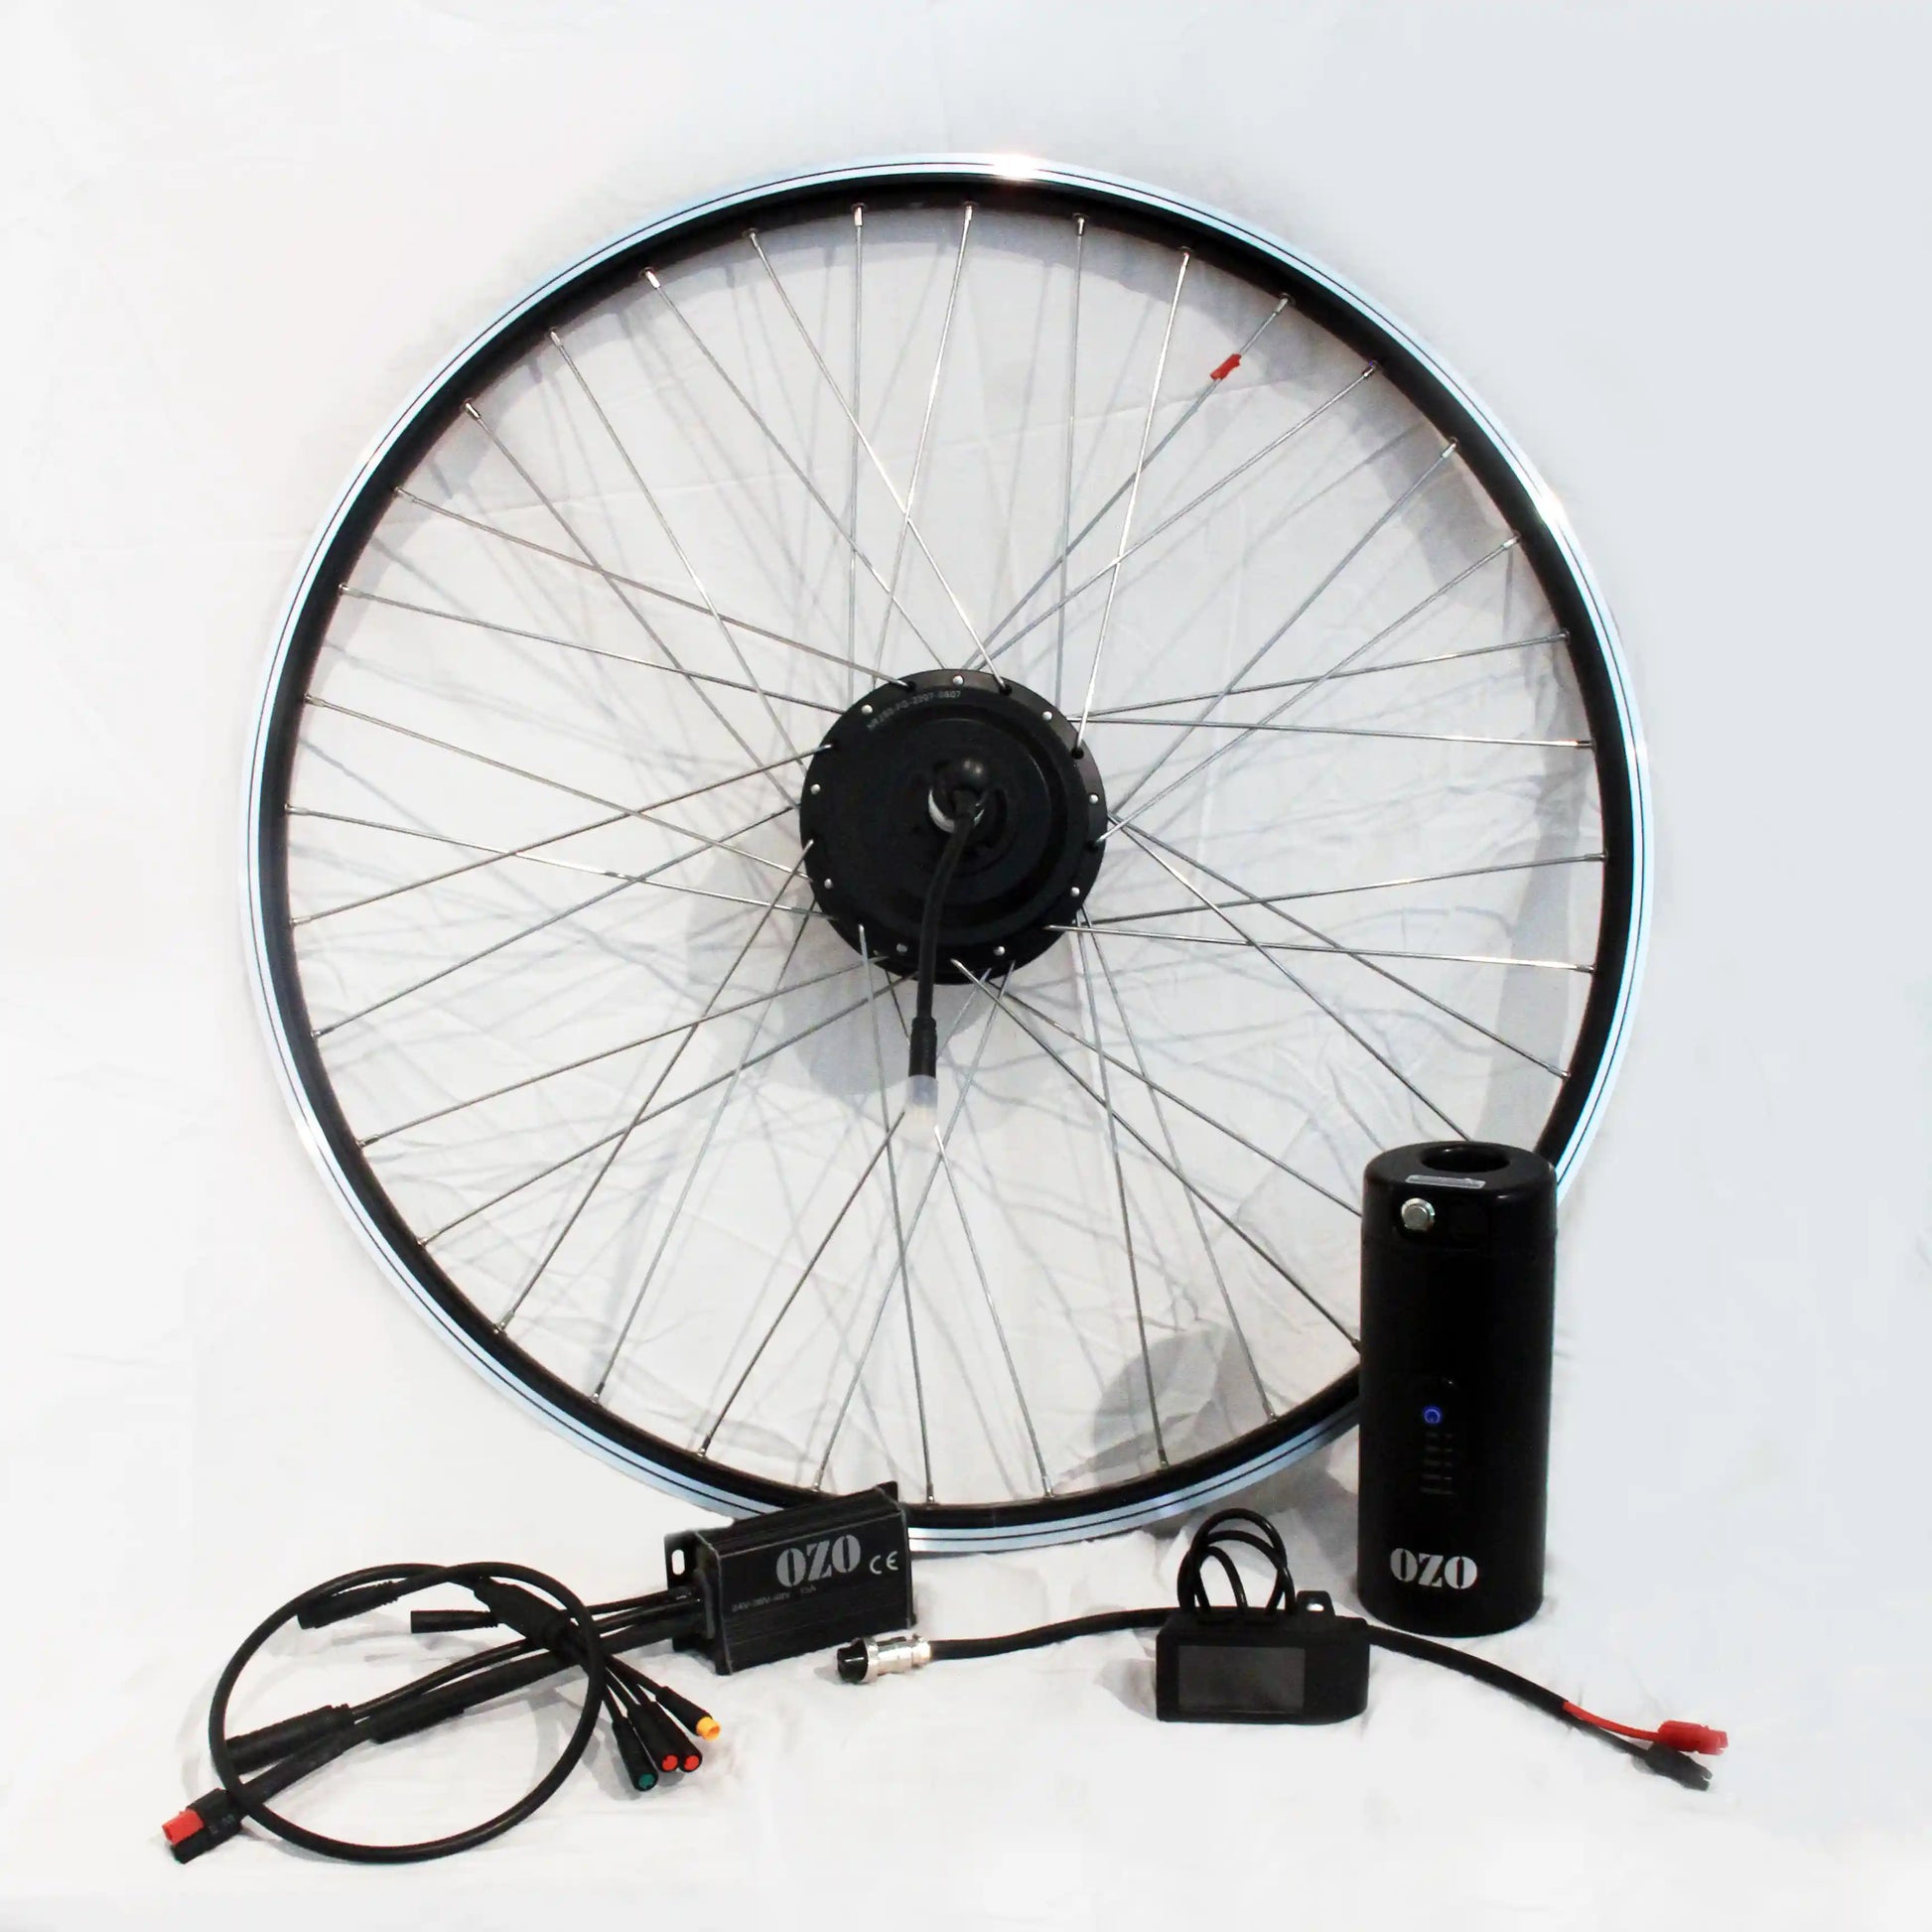 Kit de electrificación para bici urbana: motor en la rueda y batería